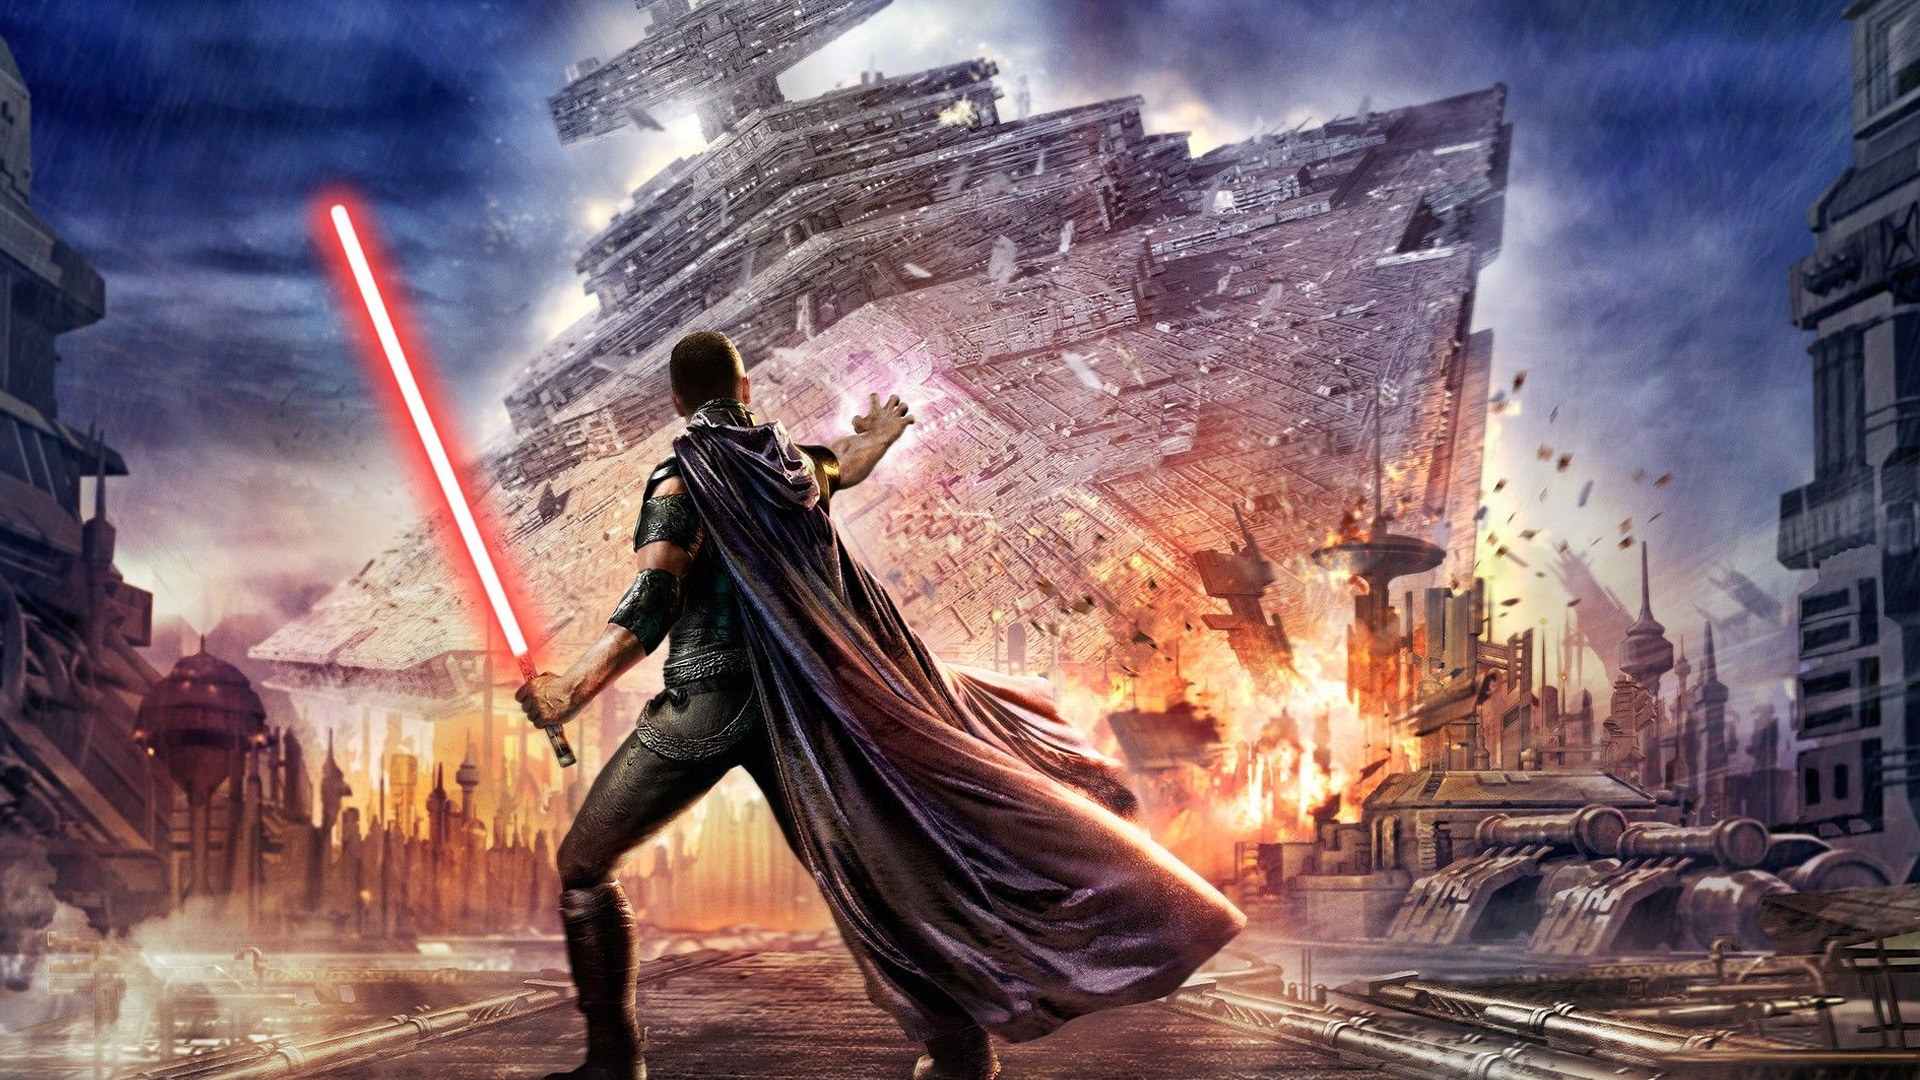 دلیل شکست بازی Star Wars: The Force Unleashed چه بود؟